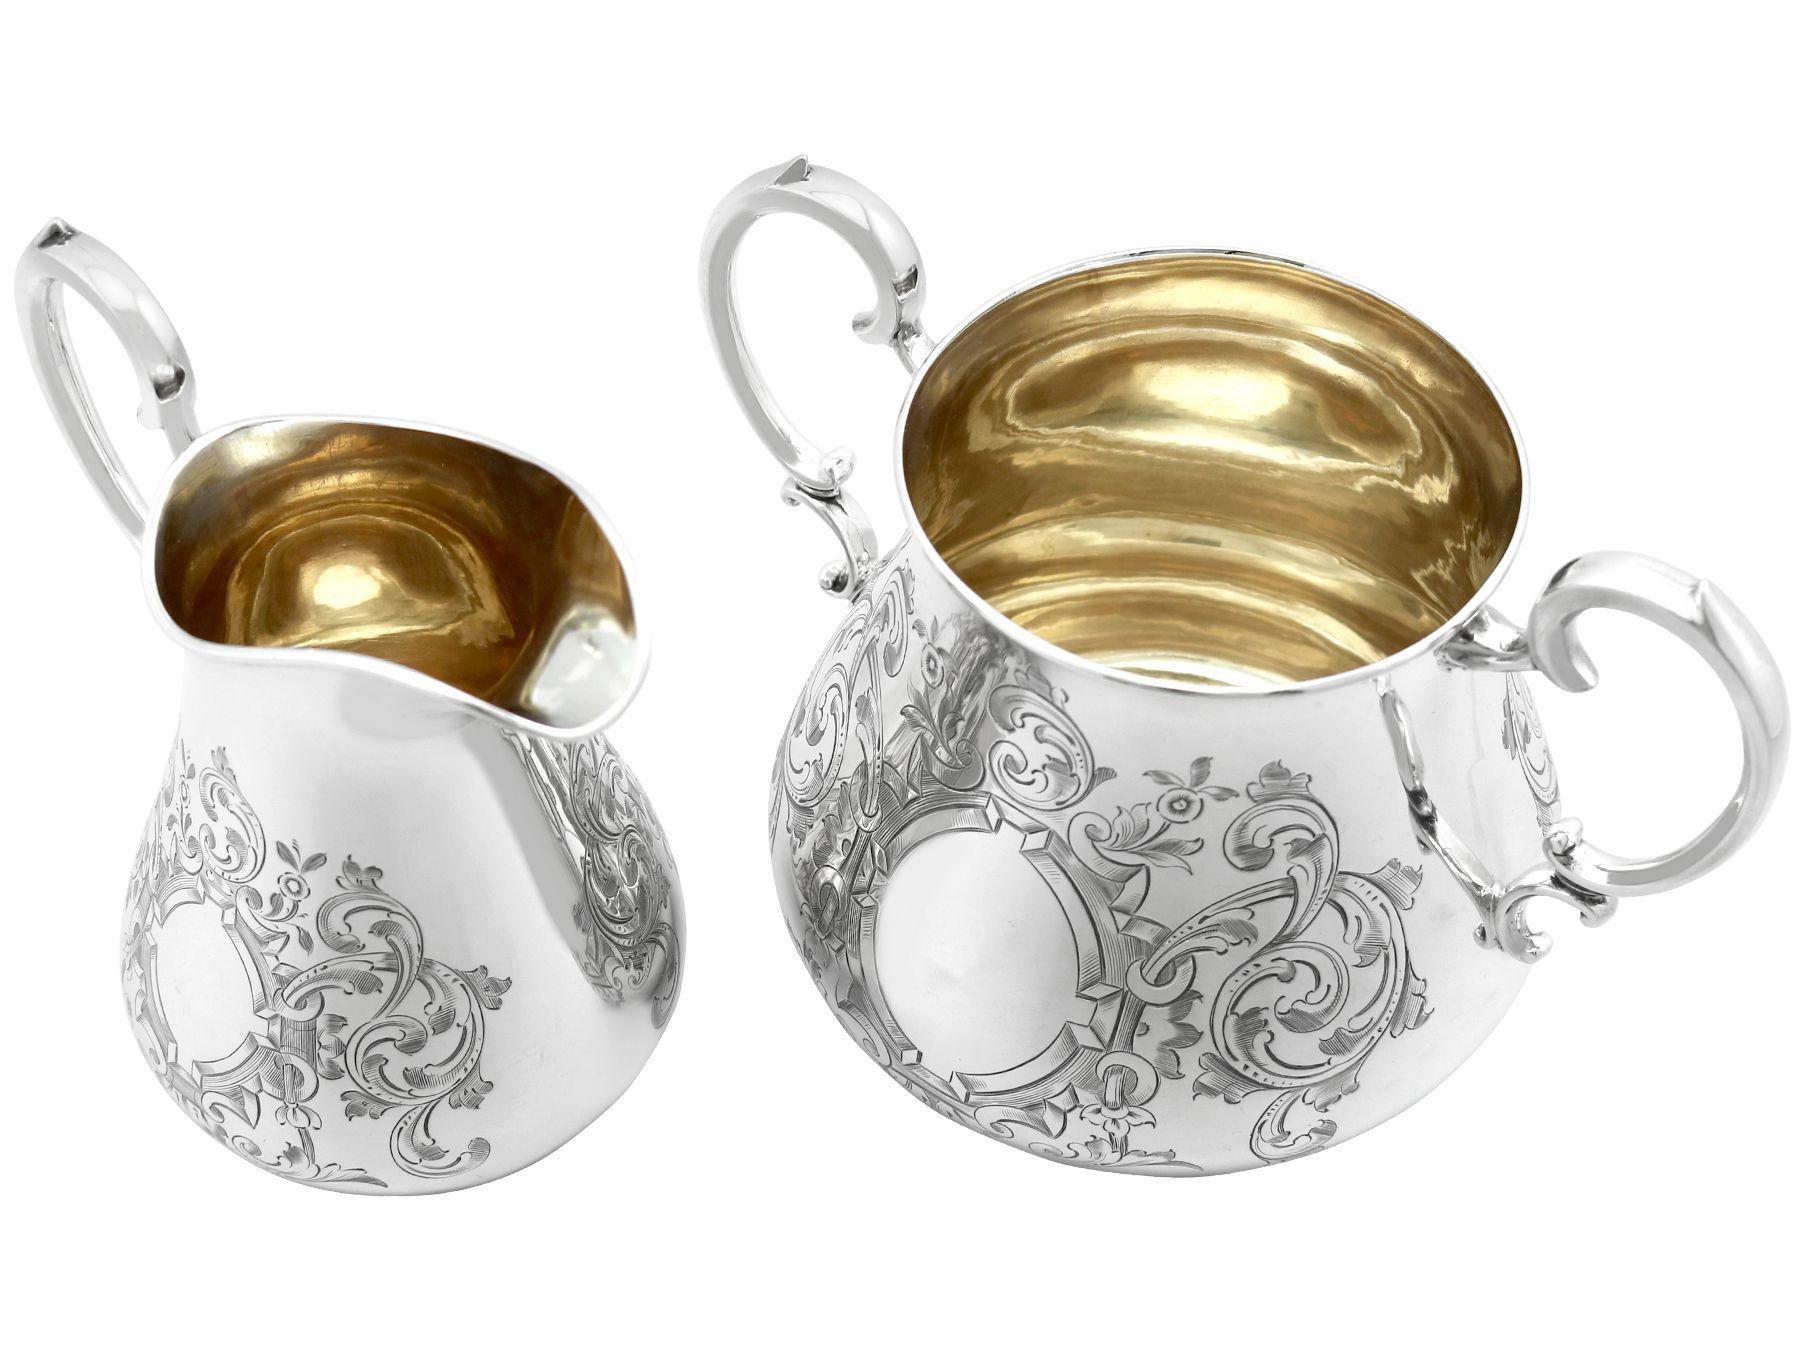 Eine außergewöhnliche, feine und beeindruckende antike viktorianische englische Sterling-Silber-Sahnekanne und Zuckerdose; eine Ergänzung zu unserer Silber-Teegeschirr-Sammlung

Dieses außergewöhnliche Paar besteht aus einer antiken viktorianischen